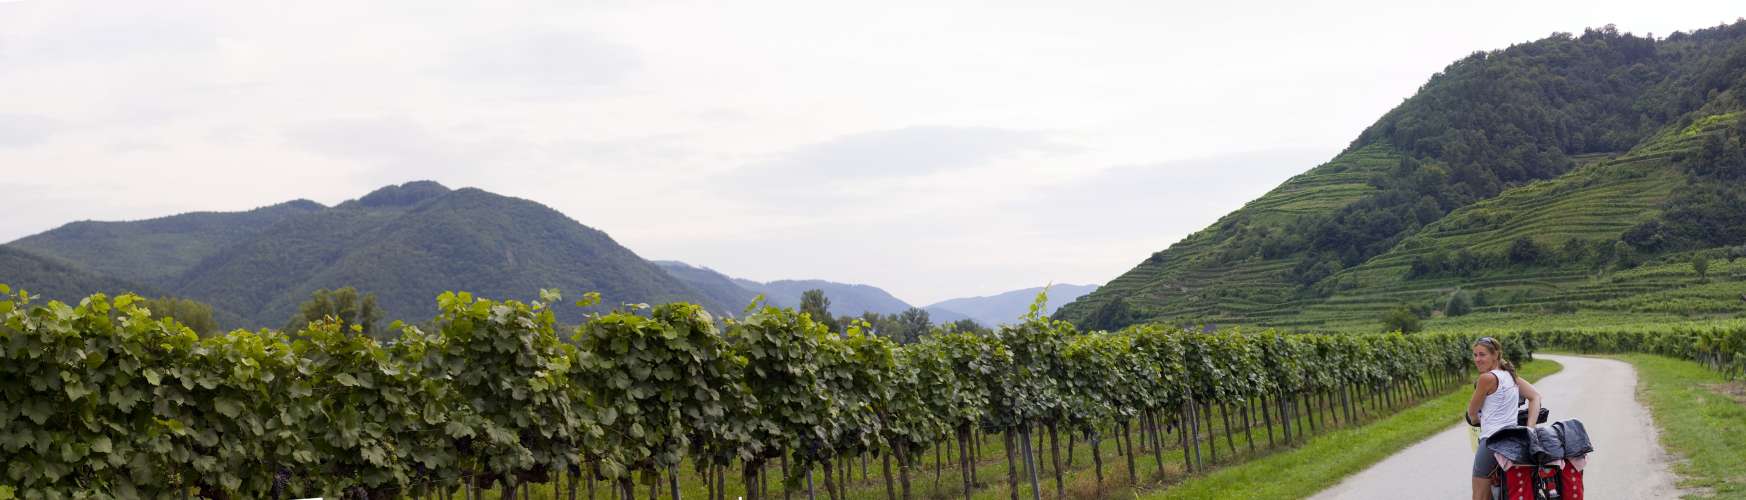 ﻿Die wunderschöne Wachau. Diesmal auf der anderen Donauseite. Eine herrliche Gegend mit tollen, sehr alten Weindörfern. Ein lohnendes Urlaubsziel!